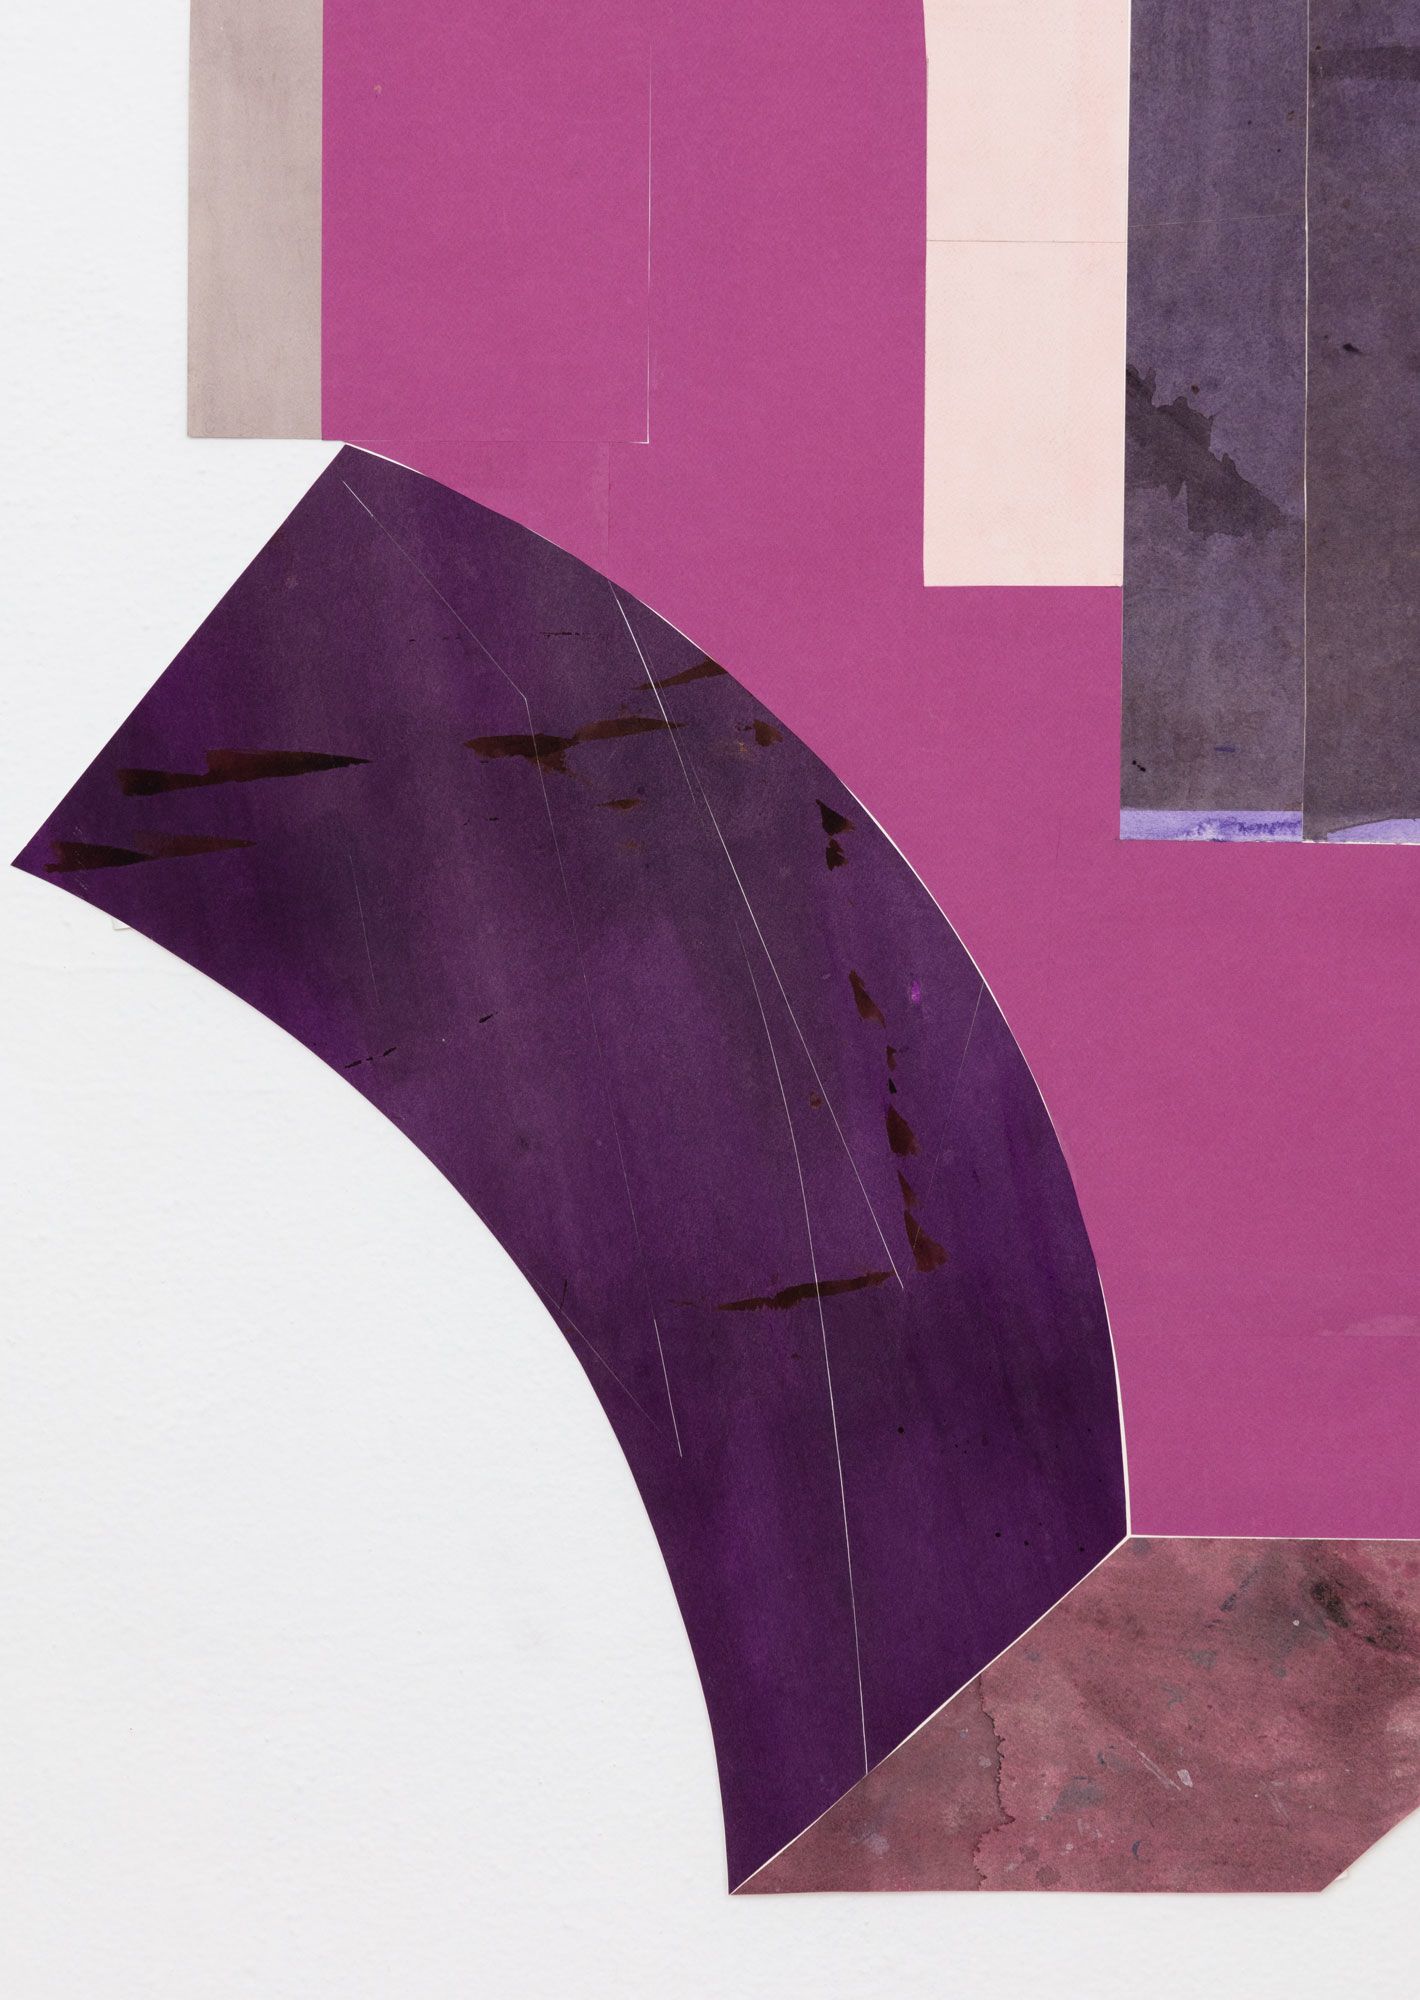 Untitled (floor paper, 2 pinks, 4 purples), detail